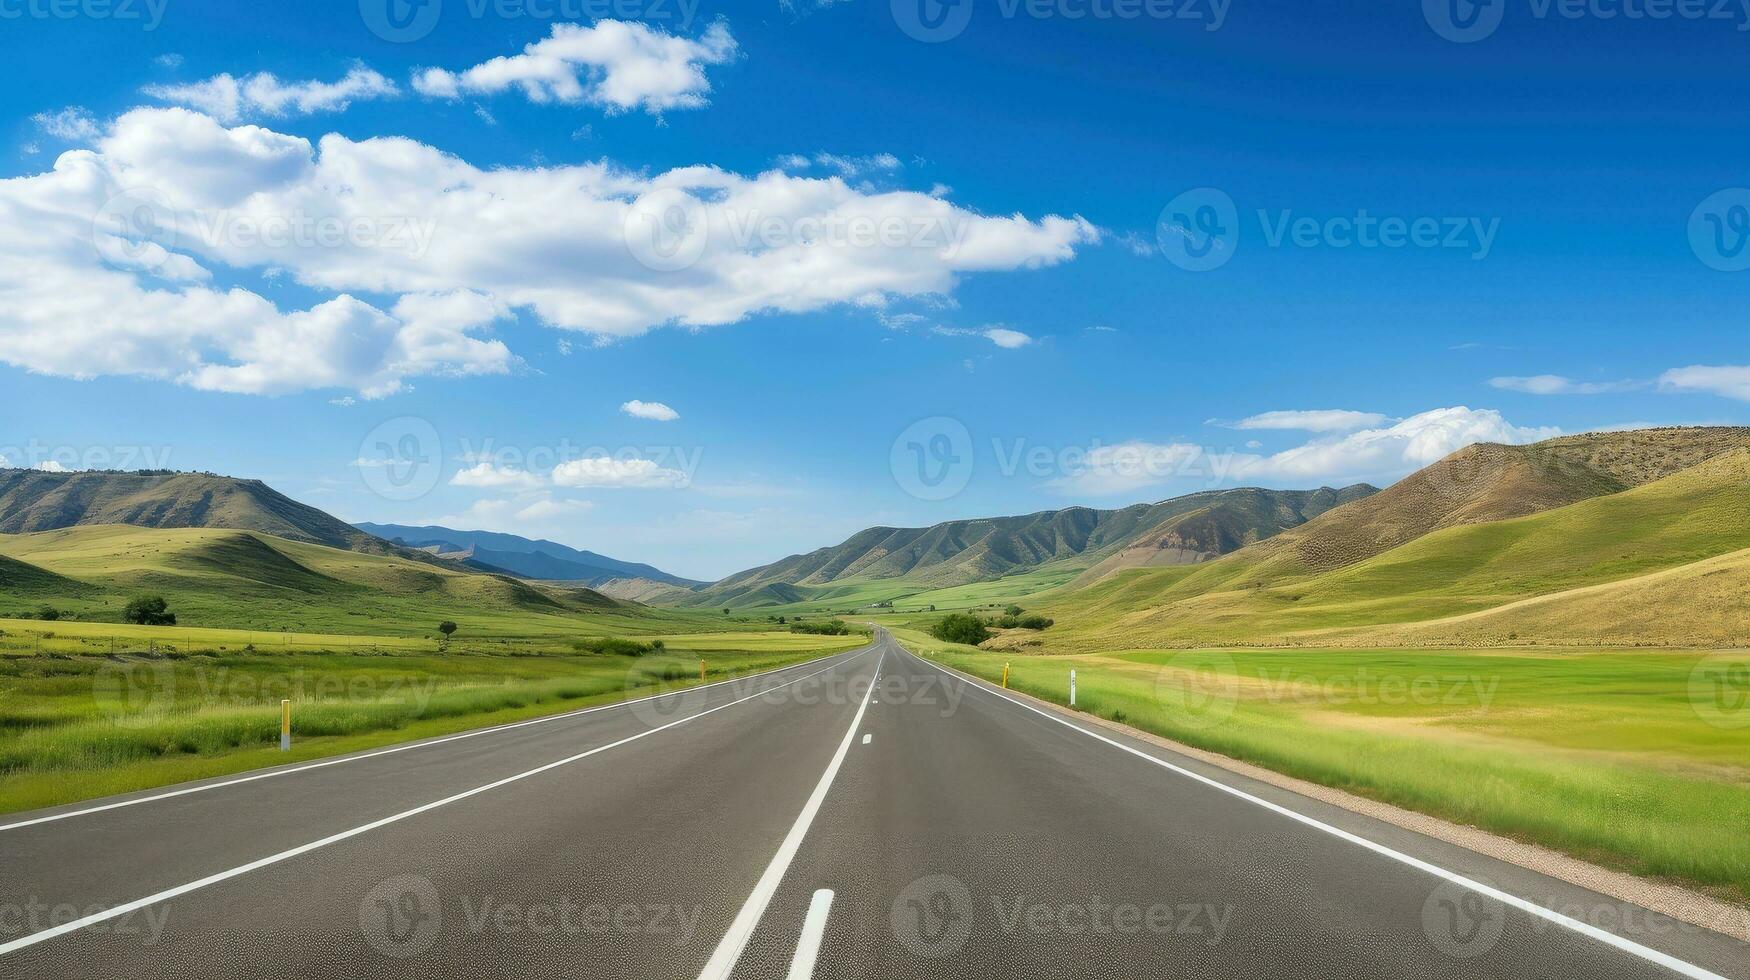 Illustration Bild von Landschaft mit Land Straße, leeren Asphalt Straße auf Blau wolkig Himmel Hintergrund. Mehrfarbig beschwingt draußen horizontal Bild, generativ ai Illustration foto